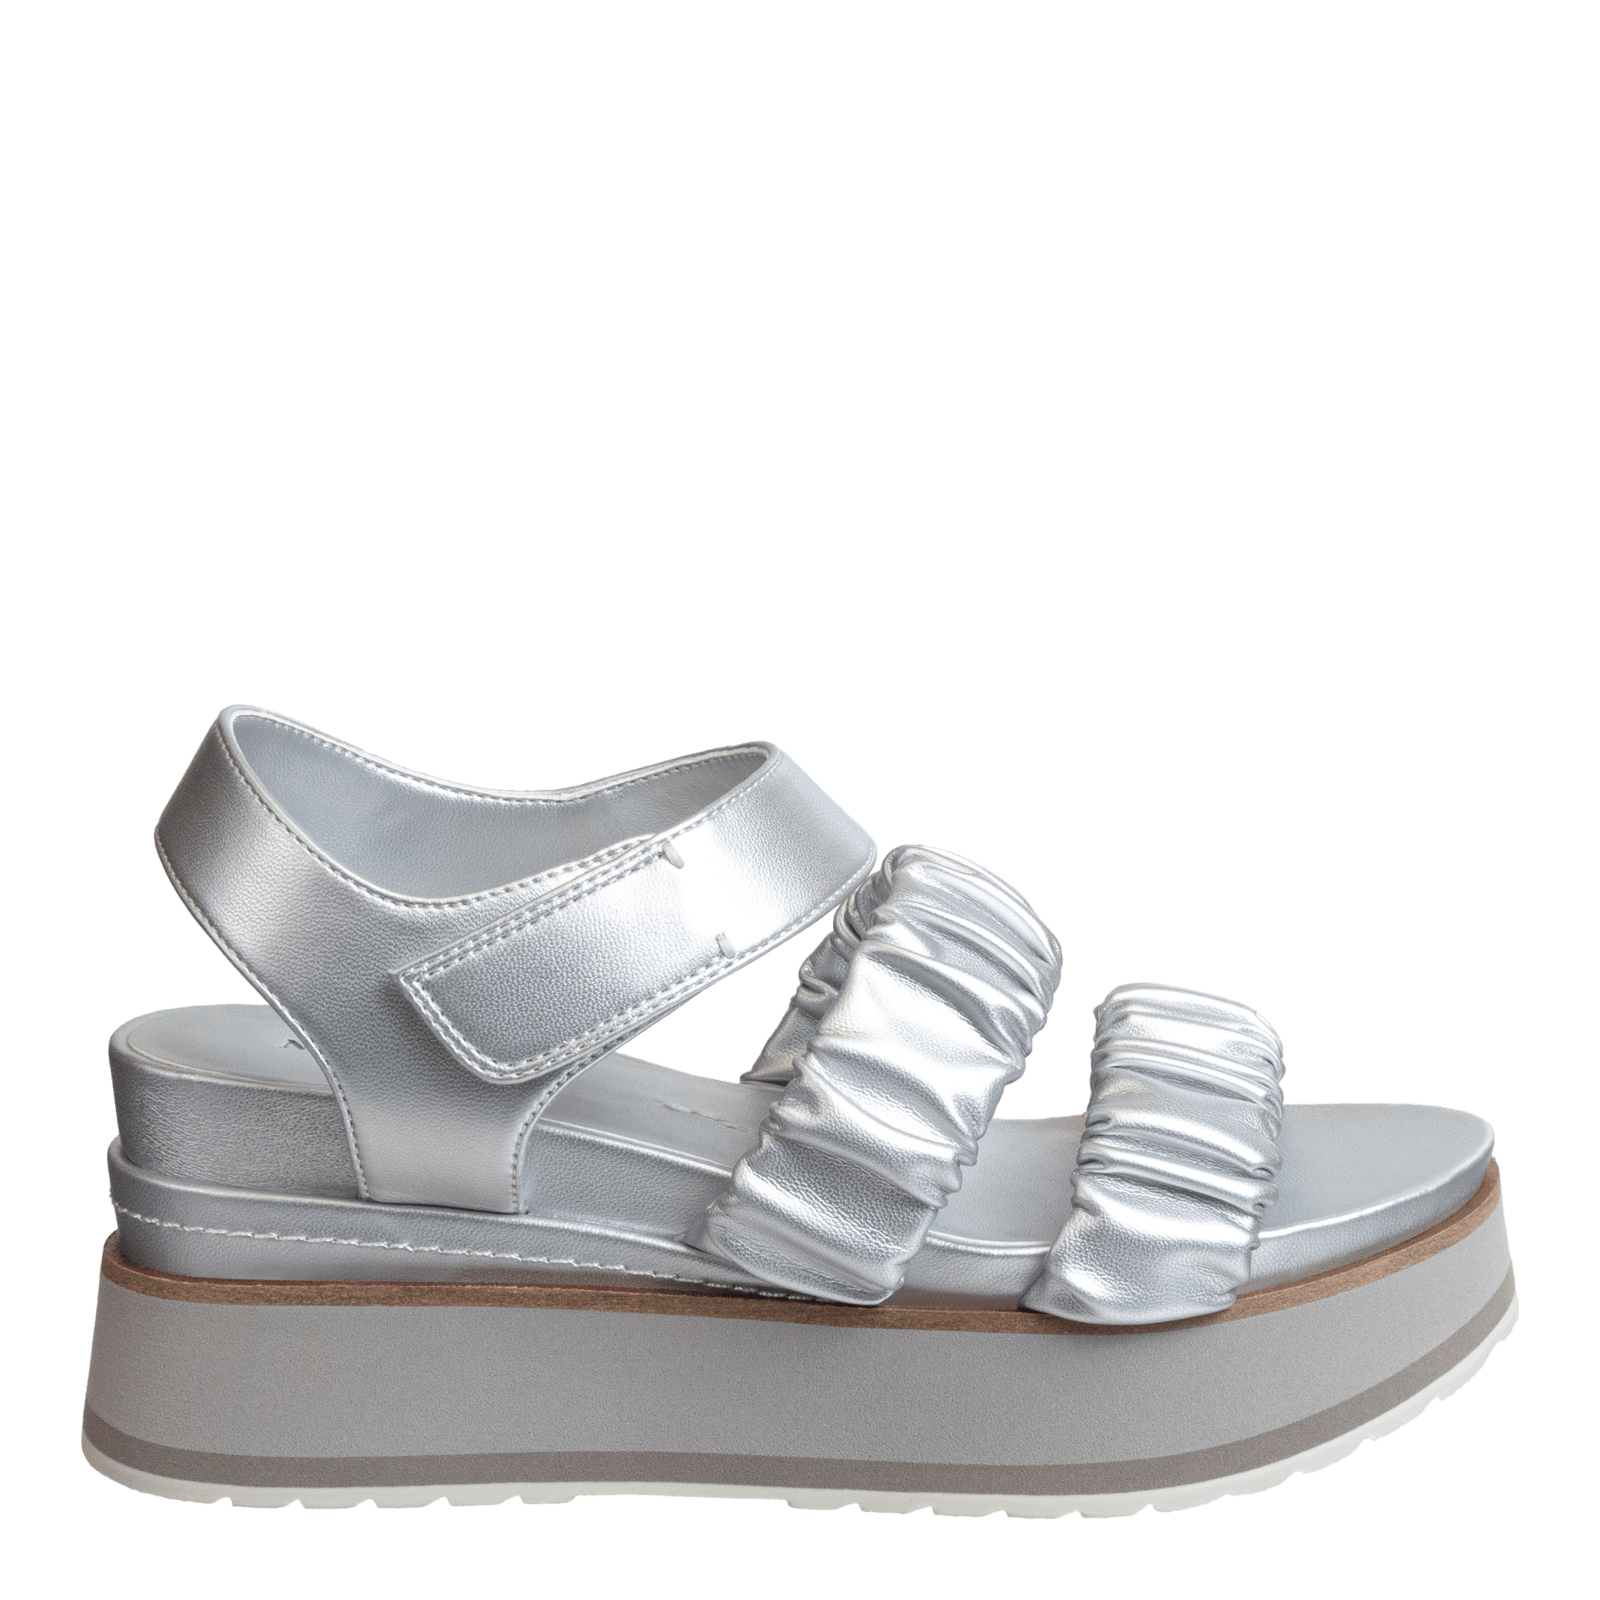 SENSOR in SILVER Platform Sandals musthaveSHOES